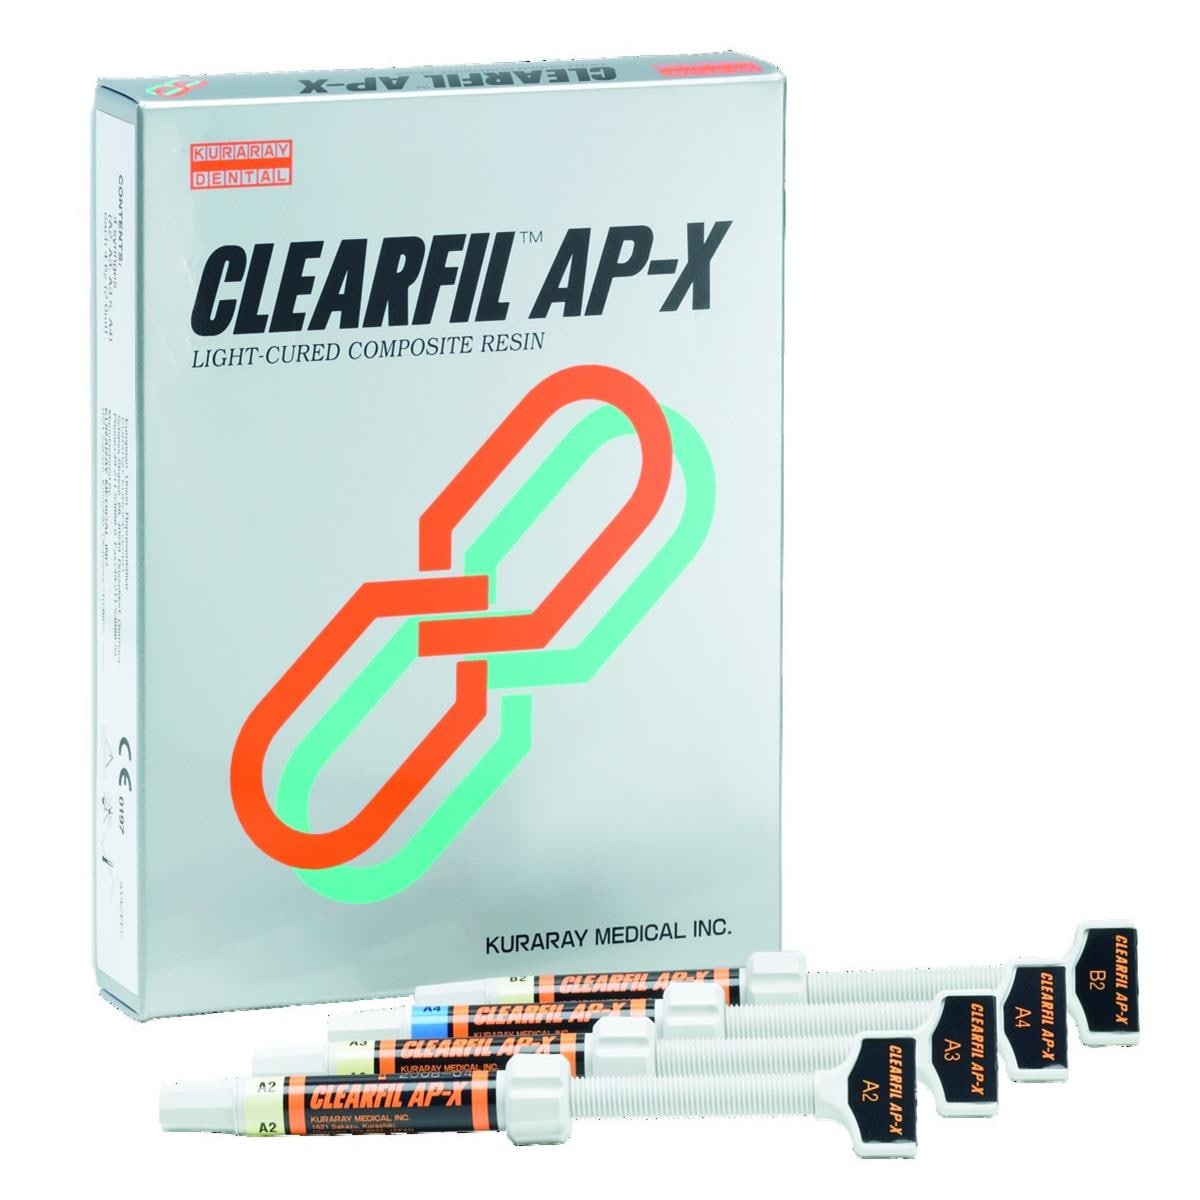 Clearfil AP-X KURARAY - B2 - Seringue de 4,6g